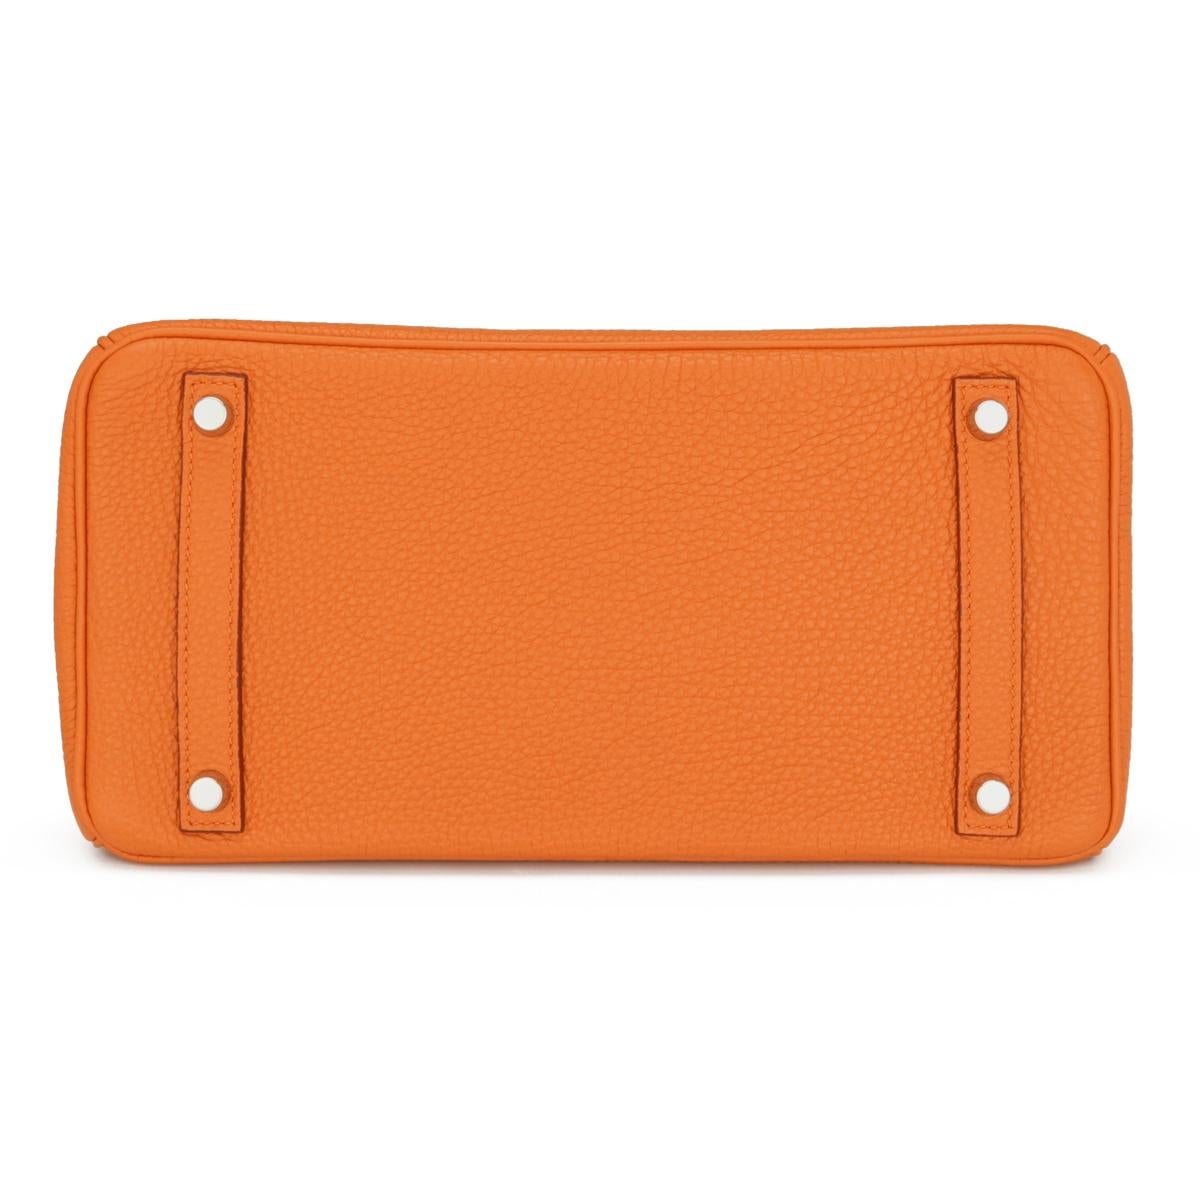 Hermès Birkin Bag 30cm Orange Togo Leather with Palladium Hardware Stamp M 2009 2